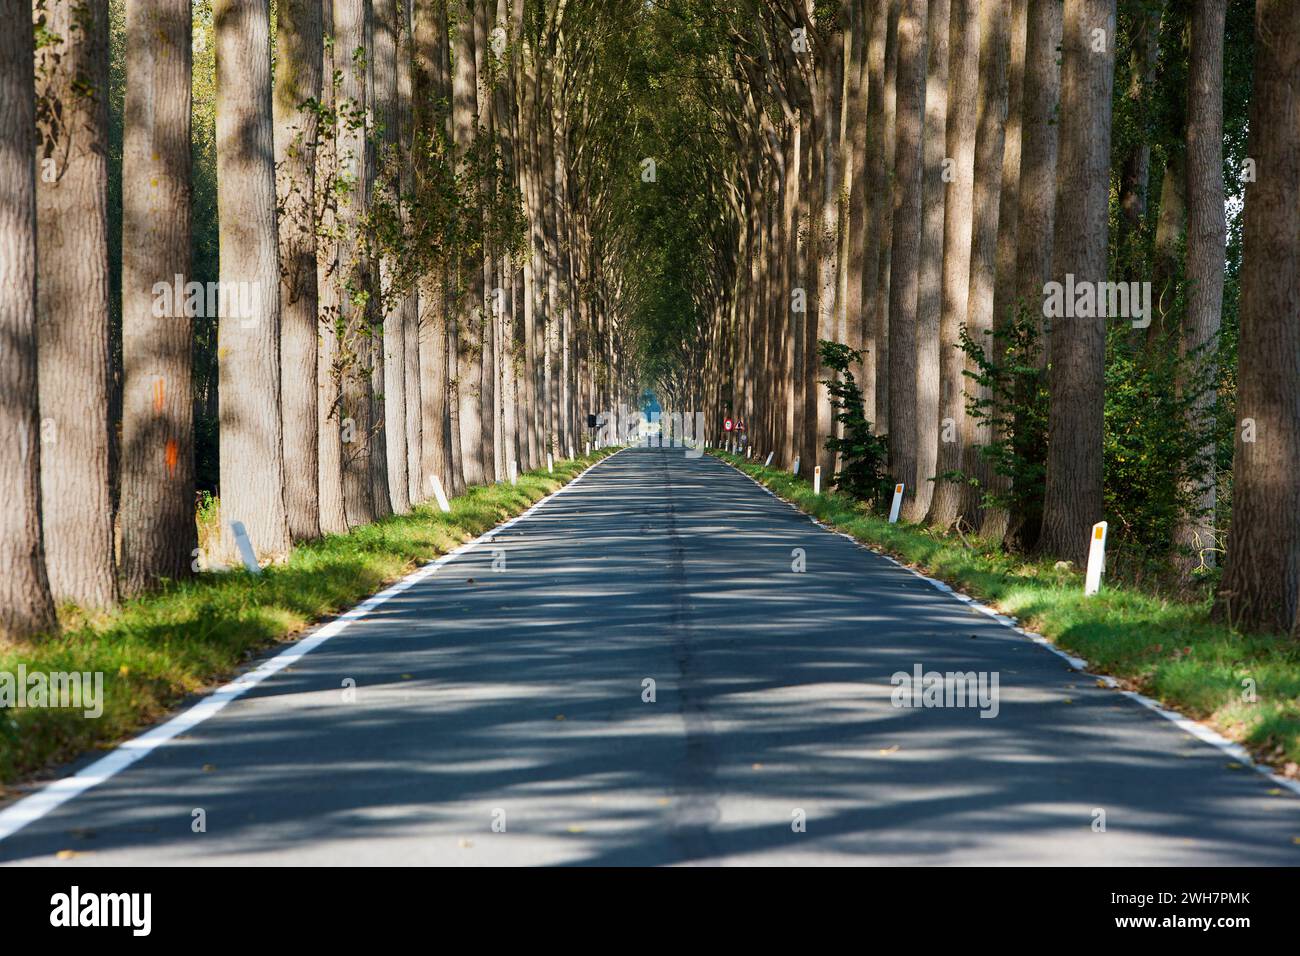 Avenue bordée d'arbres, canal de Schipdonk, Schipdonkvaart, Damme, Flandre, Belgique, Europe Banque D'Images